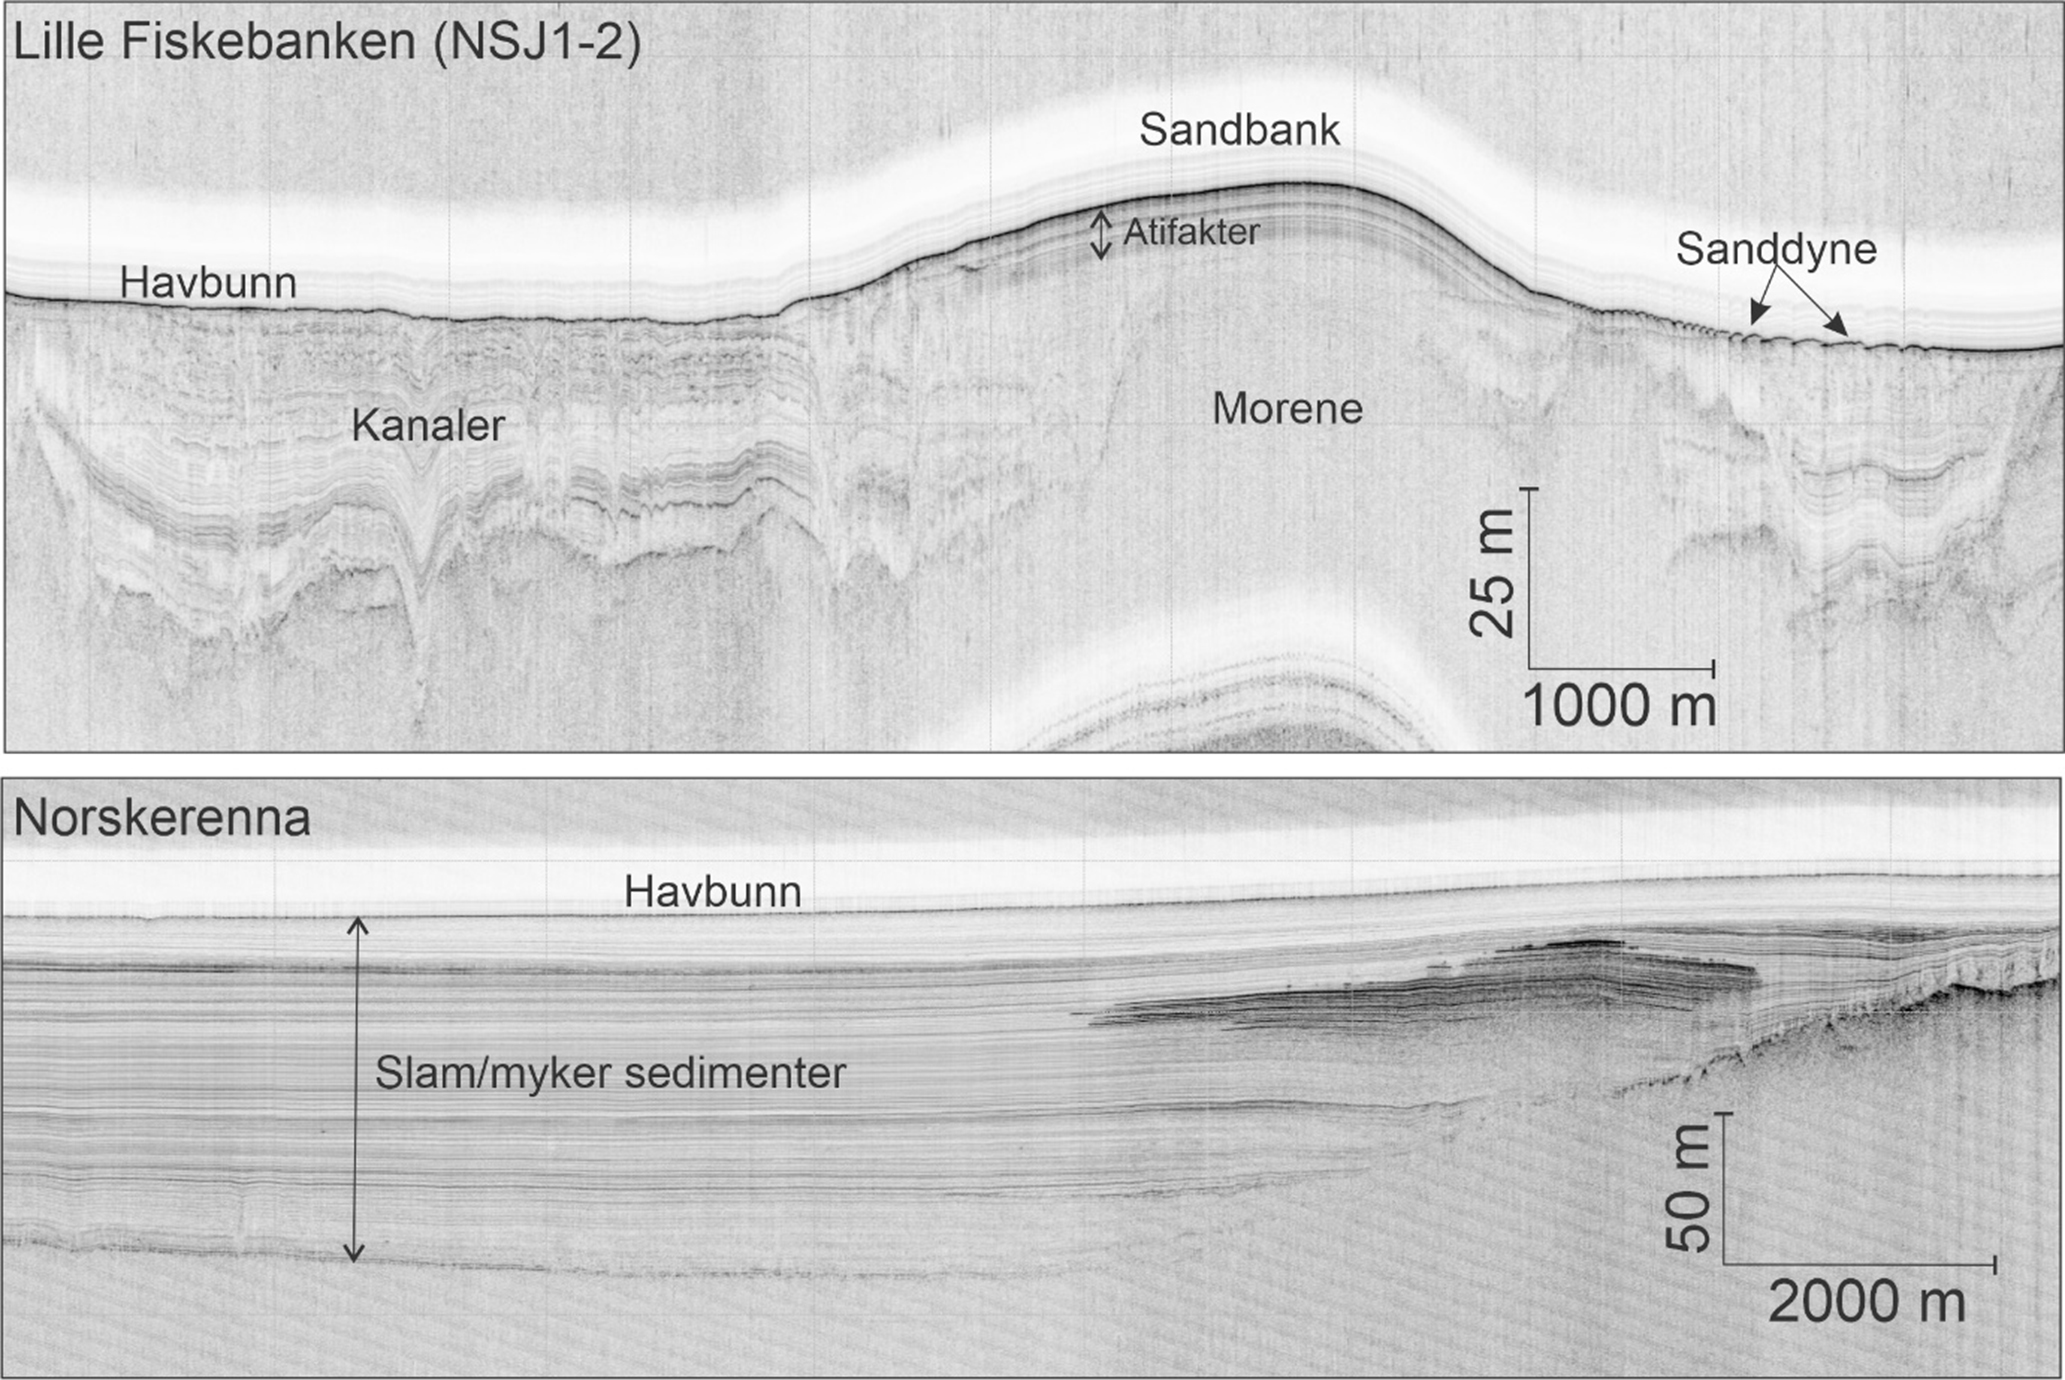 Figur 5. Mens den grunnseismiske linja fra Norskerenna vise ren jevn slam-sedimentering har Lille Fiskebank en mer kompleks geologisk historie med morene-avsetninger som senere har blitt utsatt for erosjon med dannelse av kanaler. Over dette har vannstrømmene senere dannet ulike formasjoner som sandbanker og sanddyner.